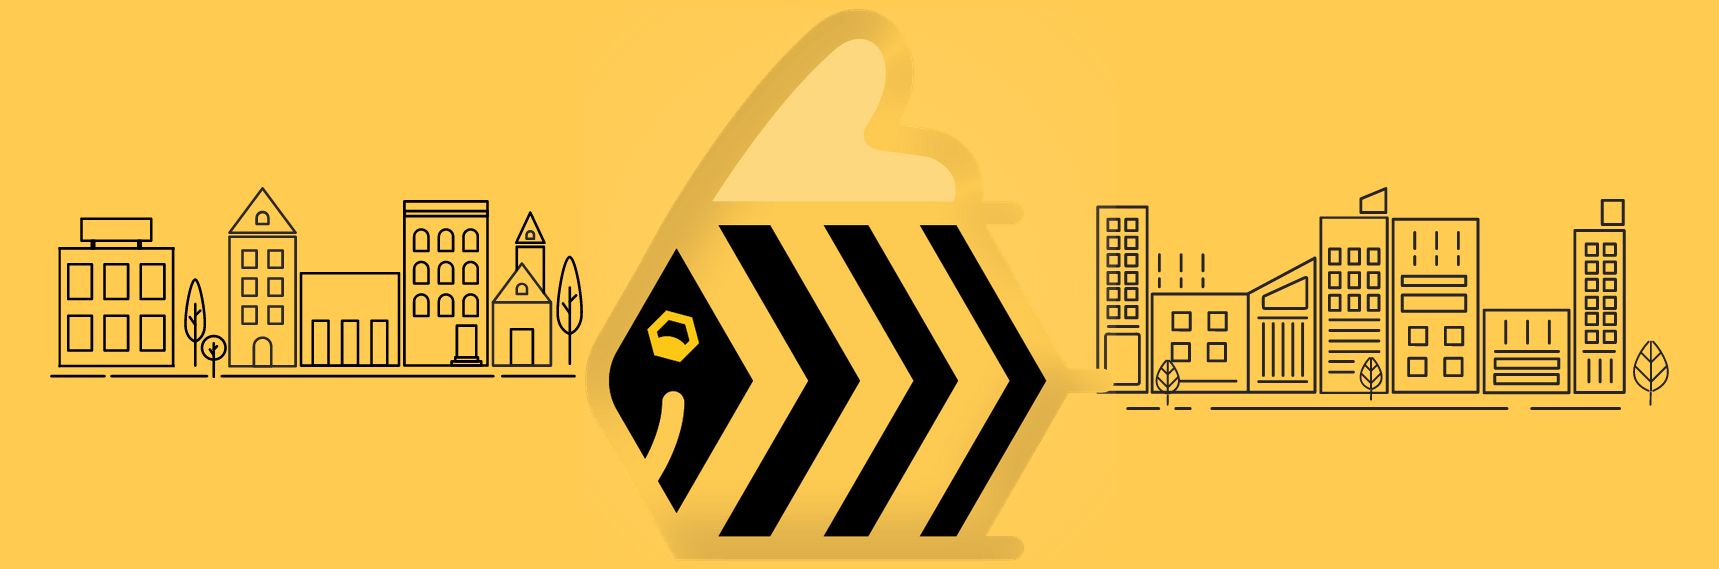 Pszczoła - logo projektu Ulopolis na żółtym tle z rysunkiem przedstawiającym teren miejski